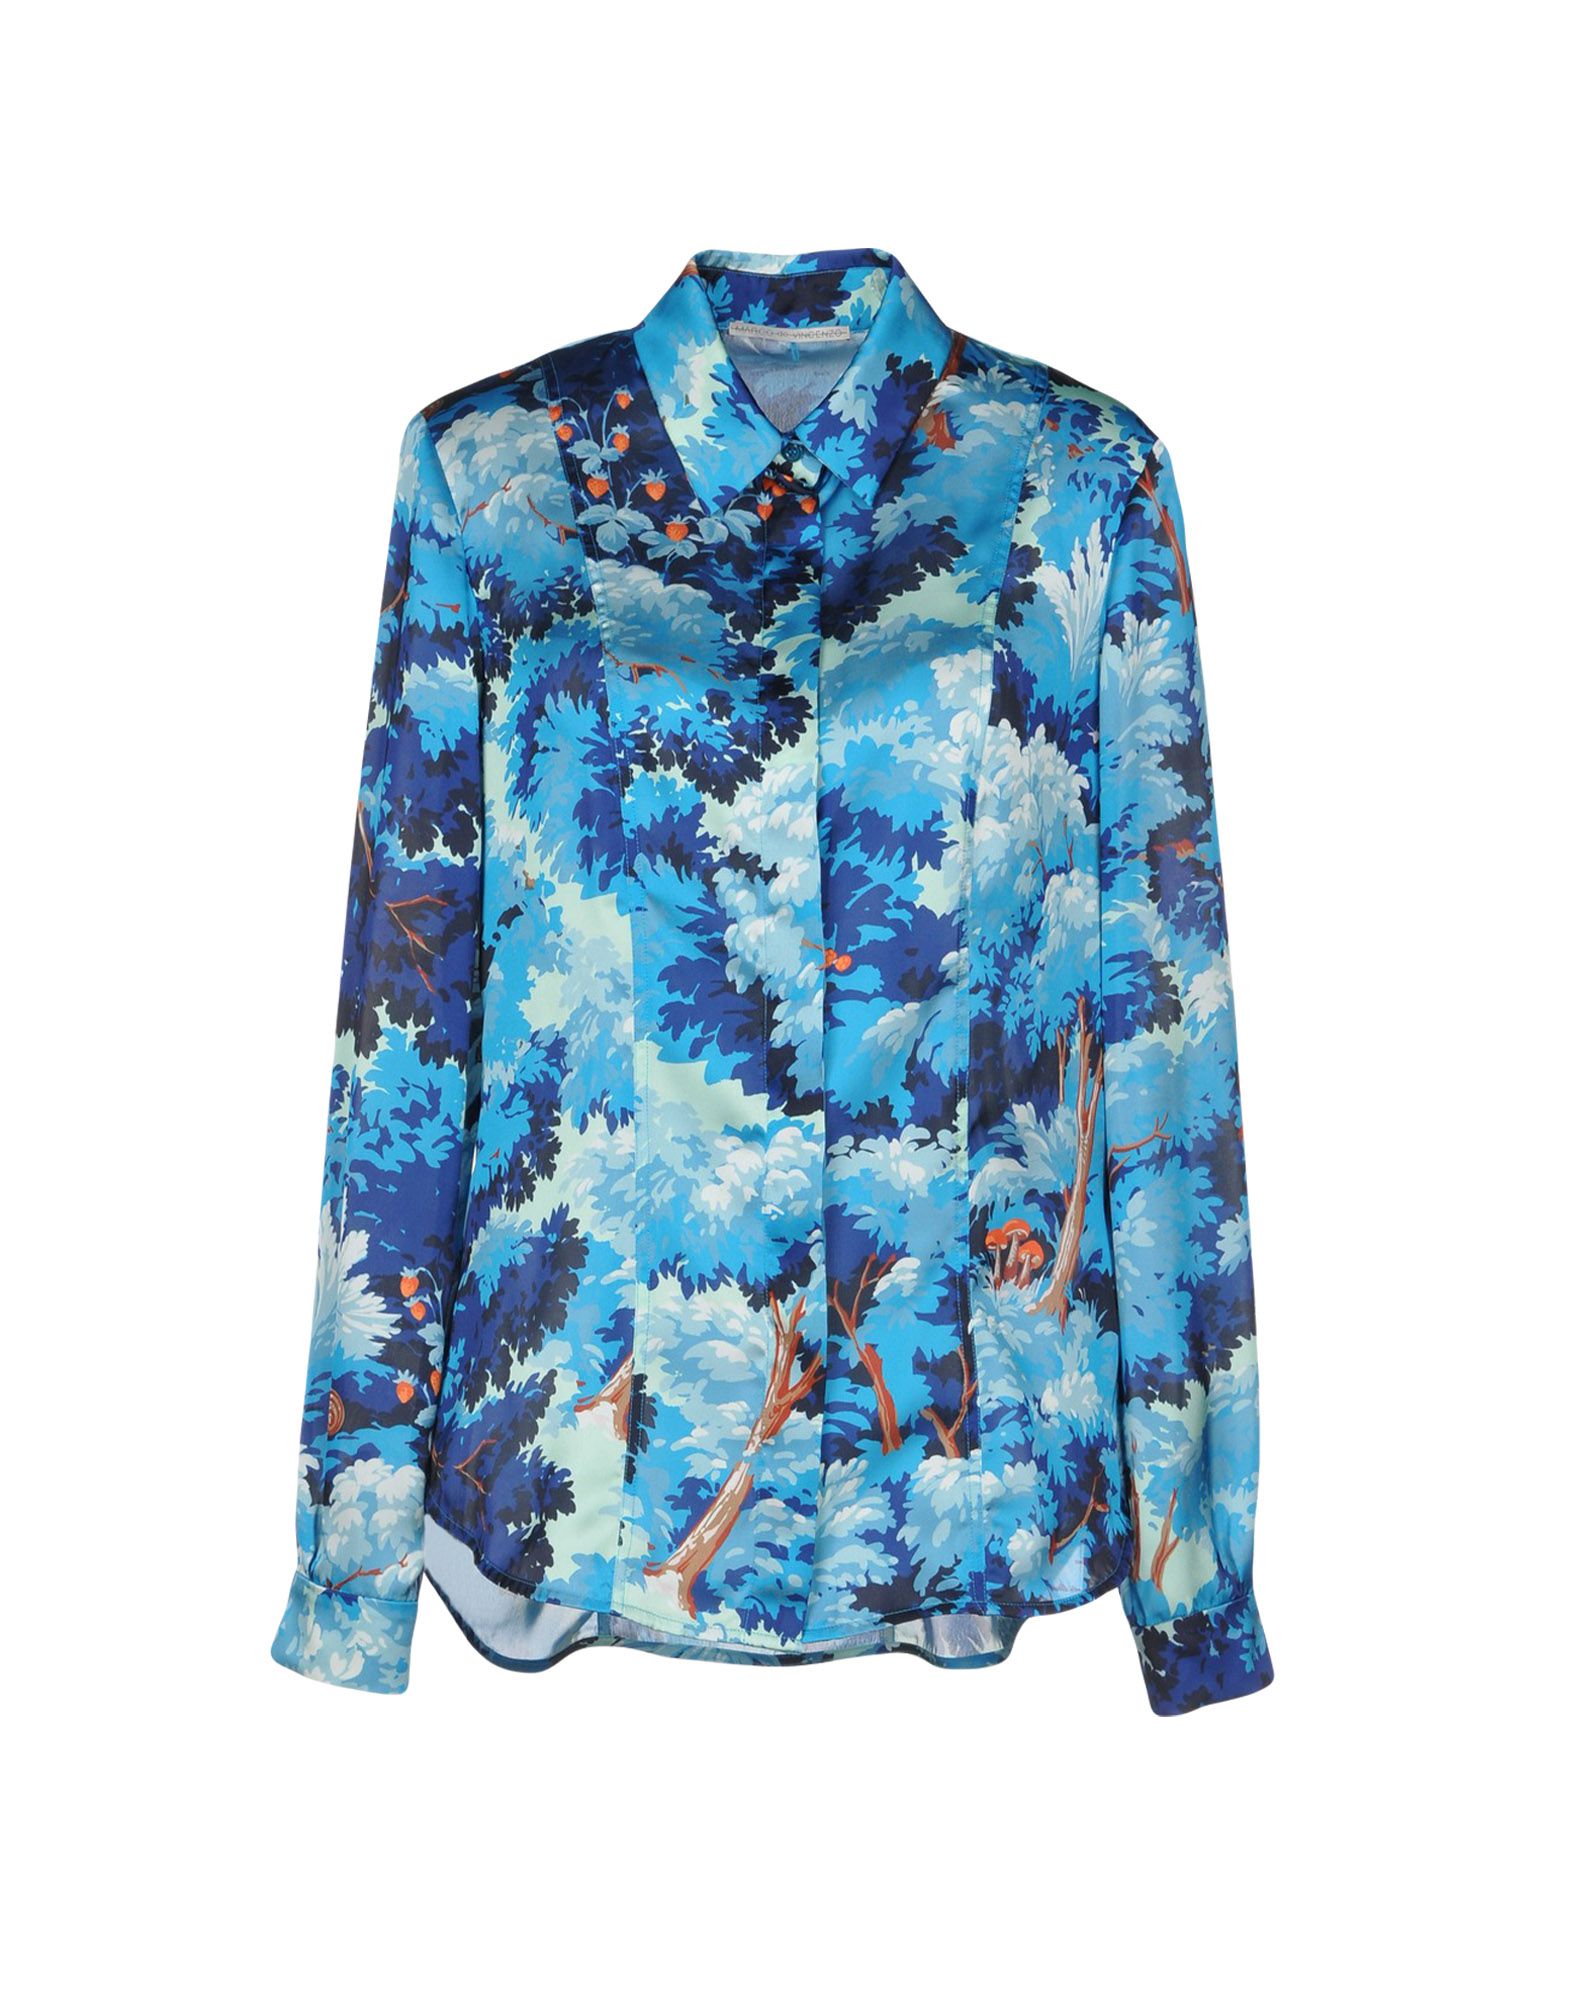 MARCO DE VINCENZO Floral shirts & blouses,38734160OF 3